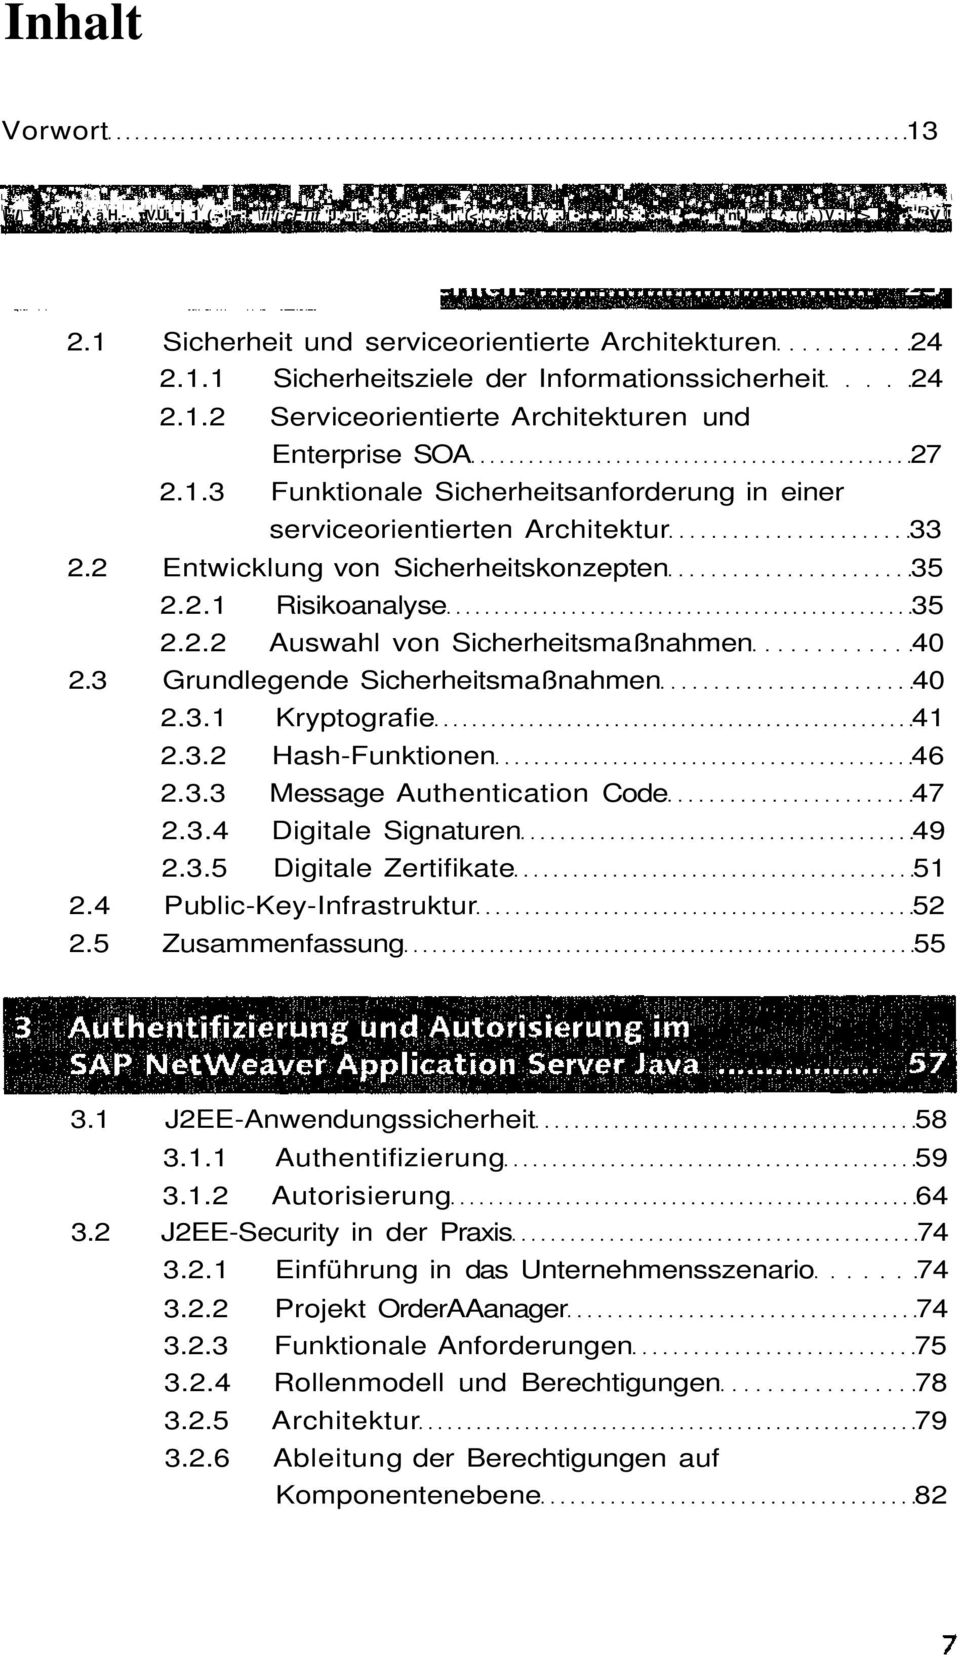 ^*f»'ntj" k "if ^.(r h)v;i t> ;,". V! 2.1 Sicherheit und serviceorientierte Architekturen 24 2.1.1 Sicherheitsziele der Informationssicherheit 24 2.1.2 Serviceorientierte Architekturen und Enterprise SOA 27 2.